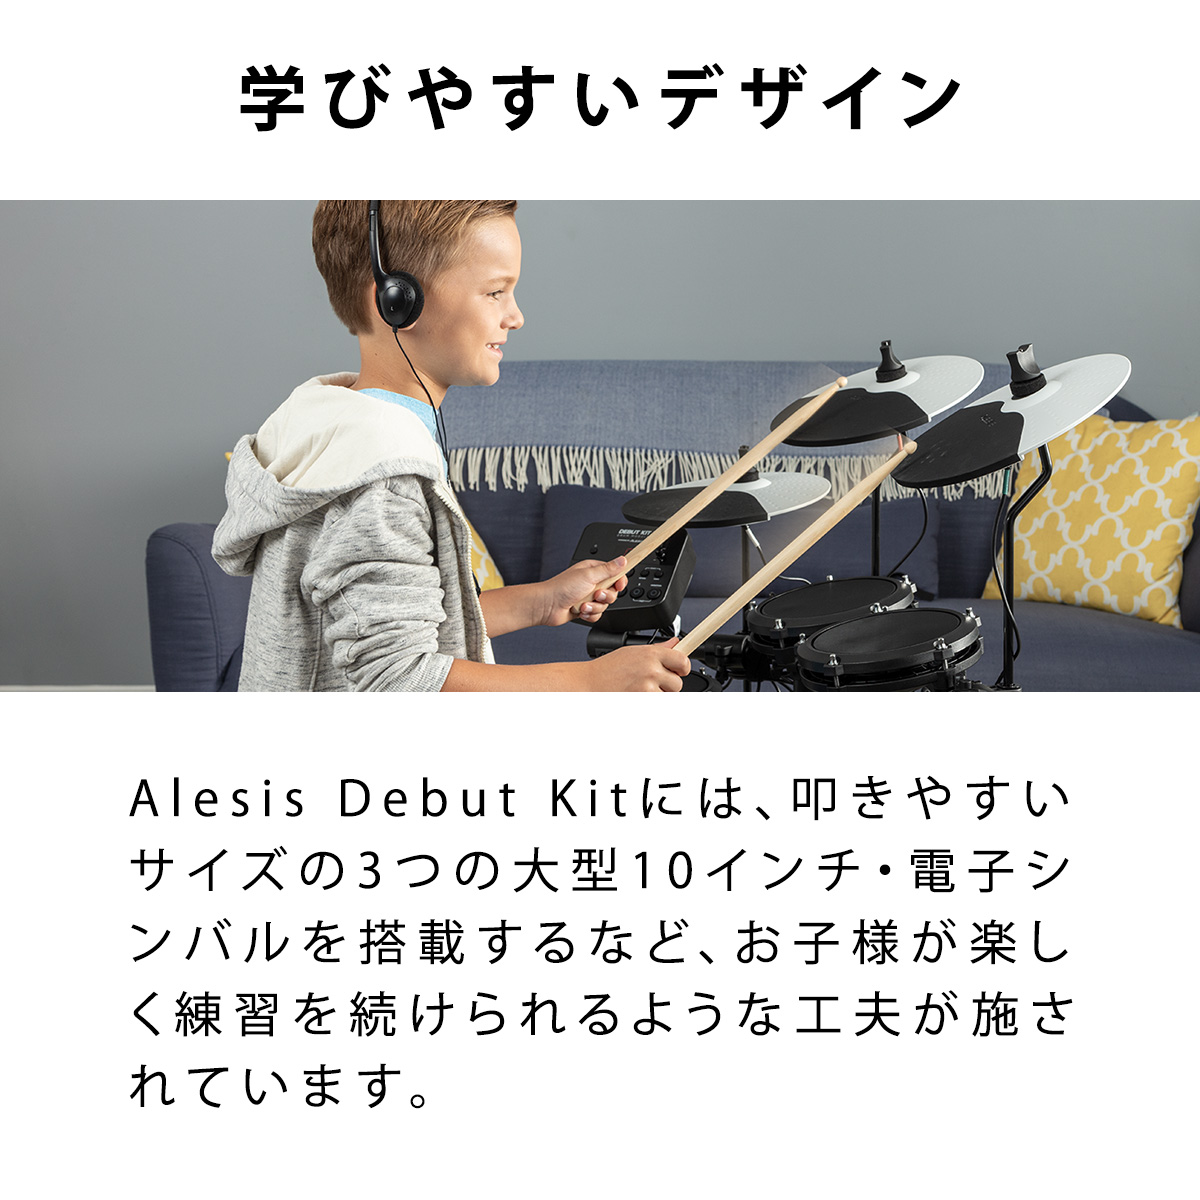 ALESIS Debut Kit 電子ドラムセット 子ども向け（推奨身長90cm以上） ミニサイズ キッズドラム 幼児〜小学生 コンパクト